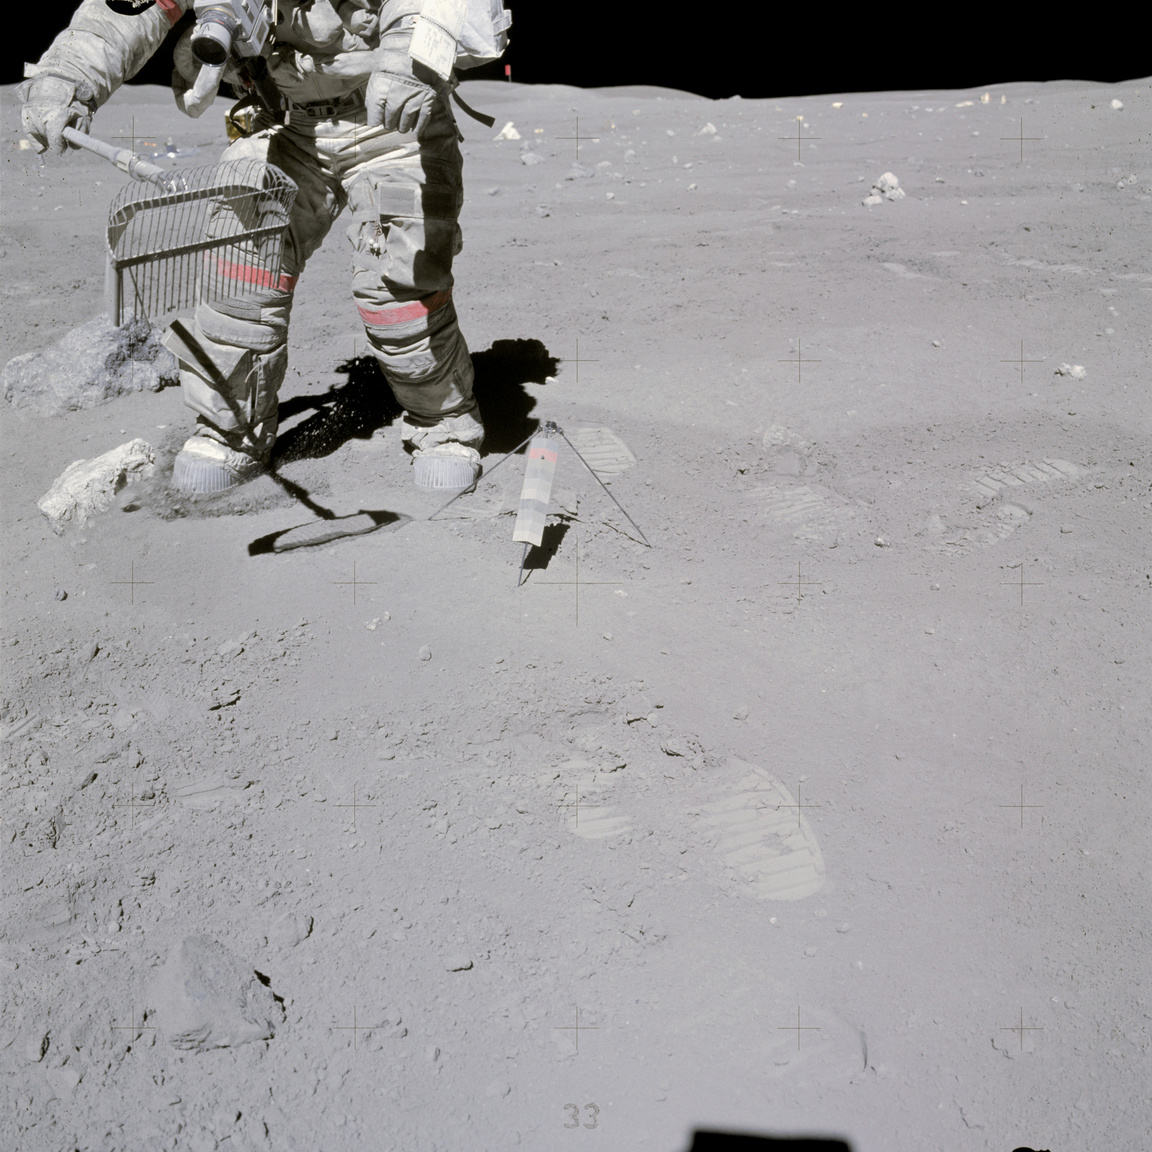 1972. április 23. Young kőzetmintákat gyűjt a harmadik, egyben utolsó holdséta során. Érdemes megfigyelni, hogy belepte a szürke holdpor az űrhajós eredetileg fehér űrruháját.